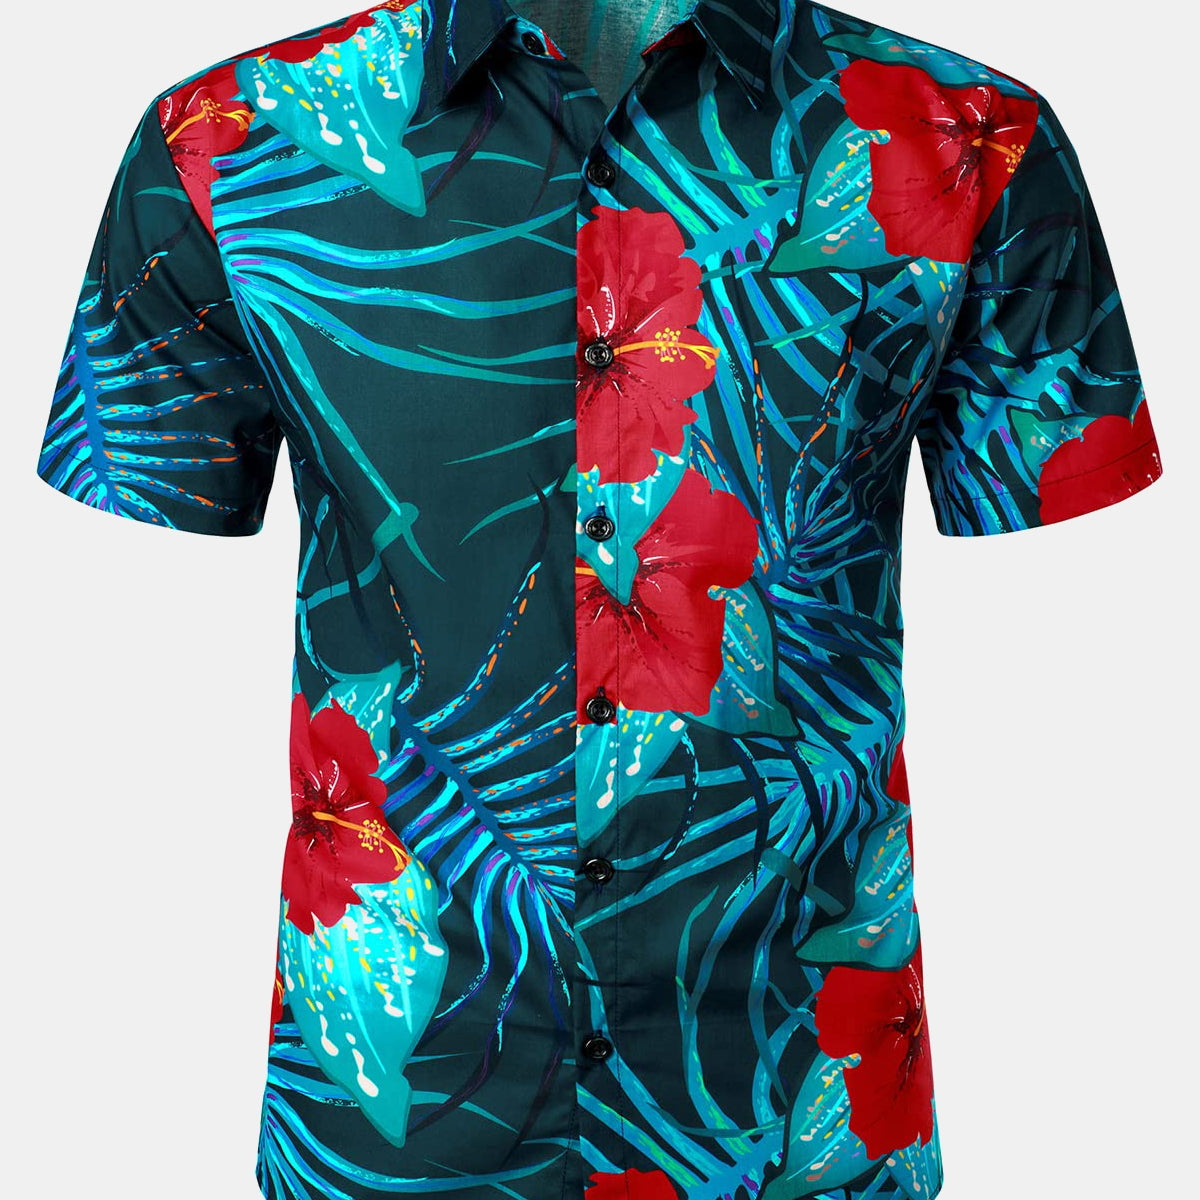 Men's Blue Hawaiian Floral Print Tropical Summer Beach Short Sleeve Shirt